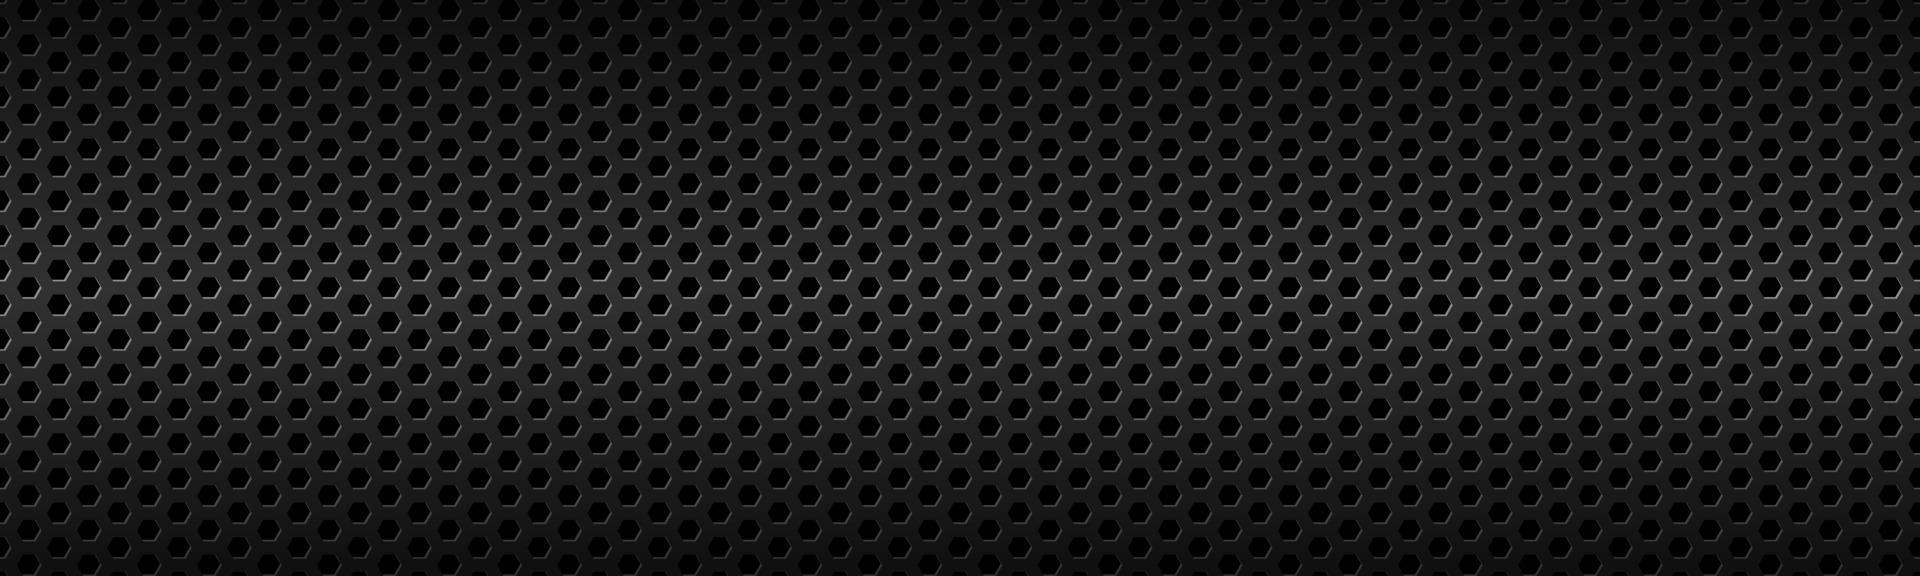 escuro geométrico hexagonal cabeçalho abstrato preto metálico textura moderna criativa banner ilustração vetorial vetor